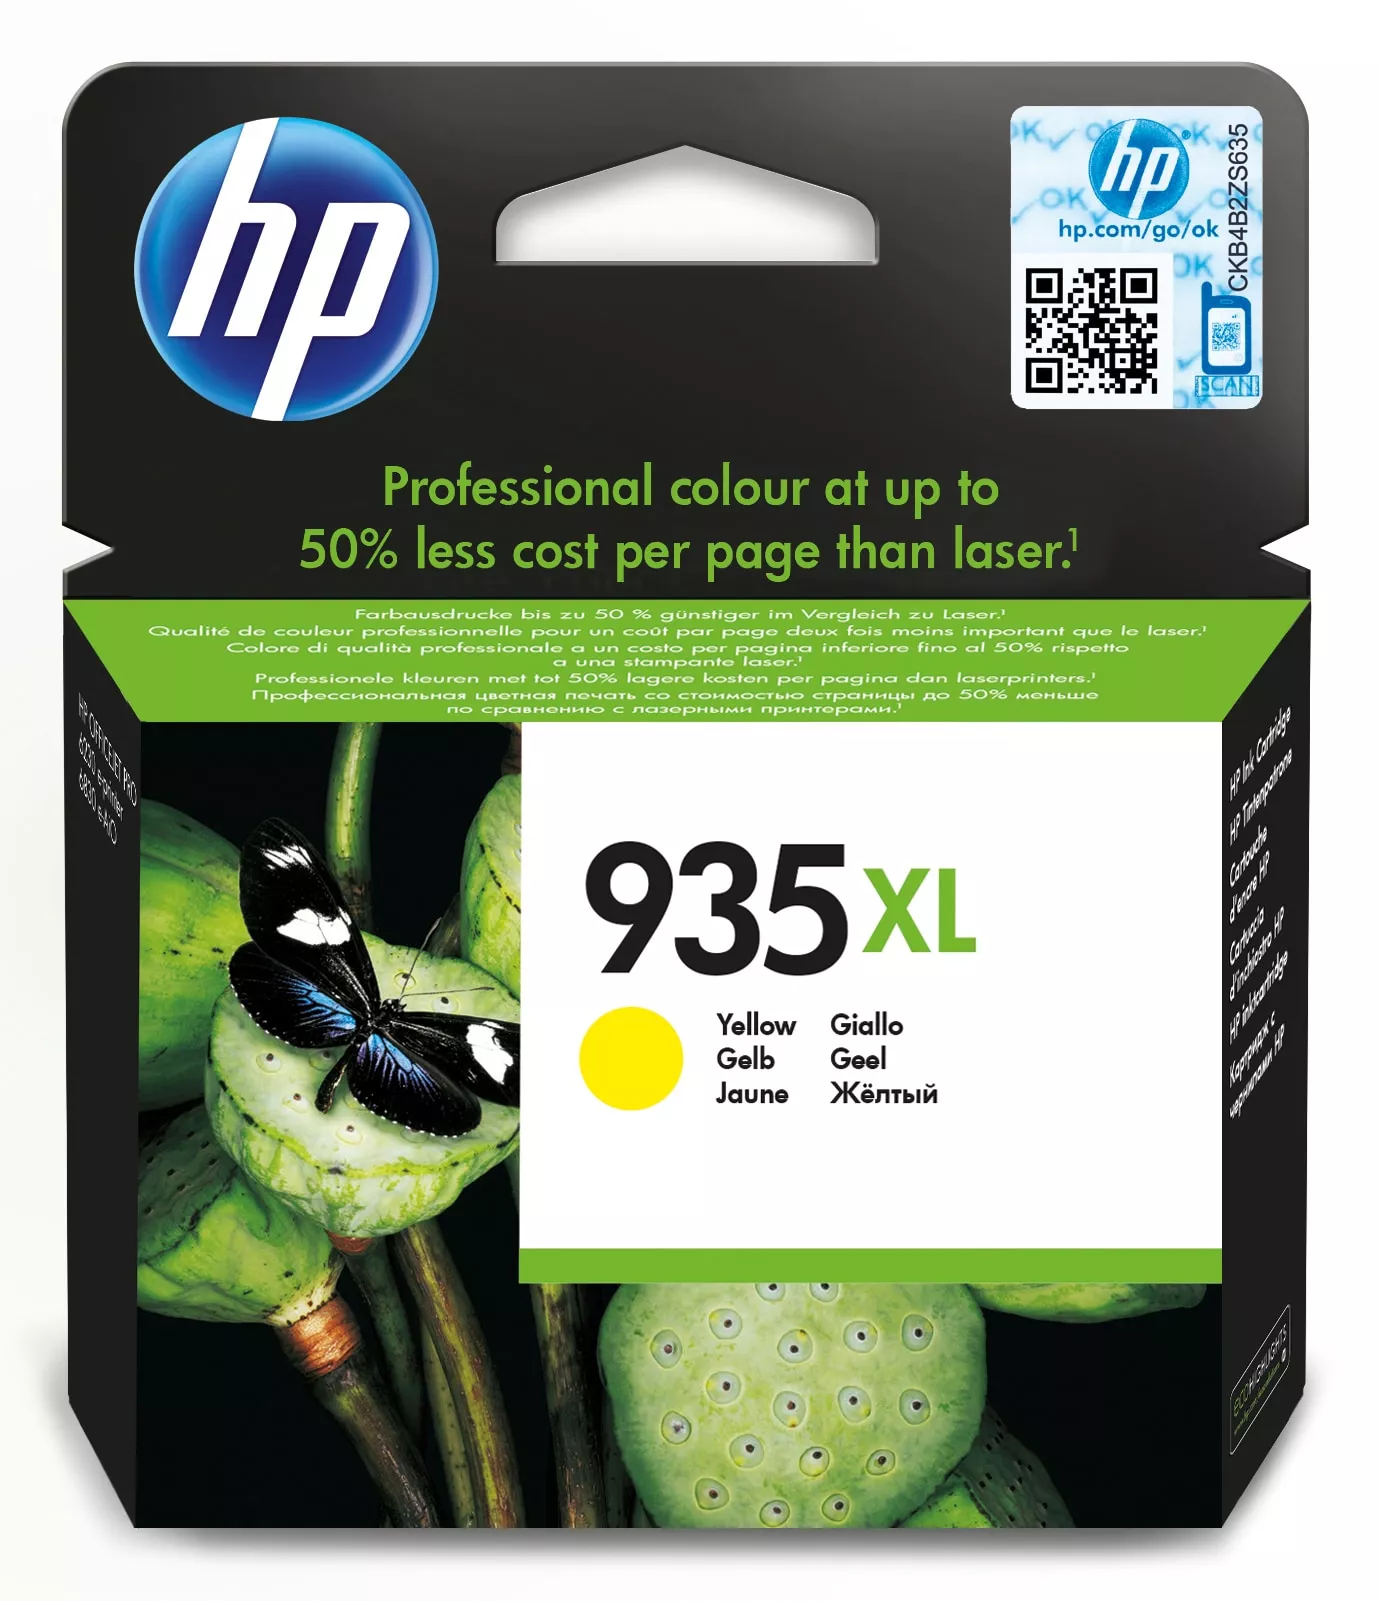 Achat HP 935XL original Ink cartridge C2P26AE BGX yellow high au meilleur prix